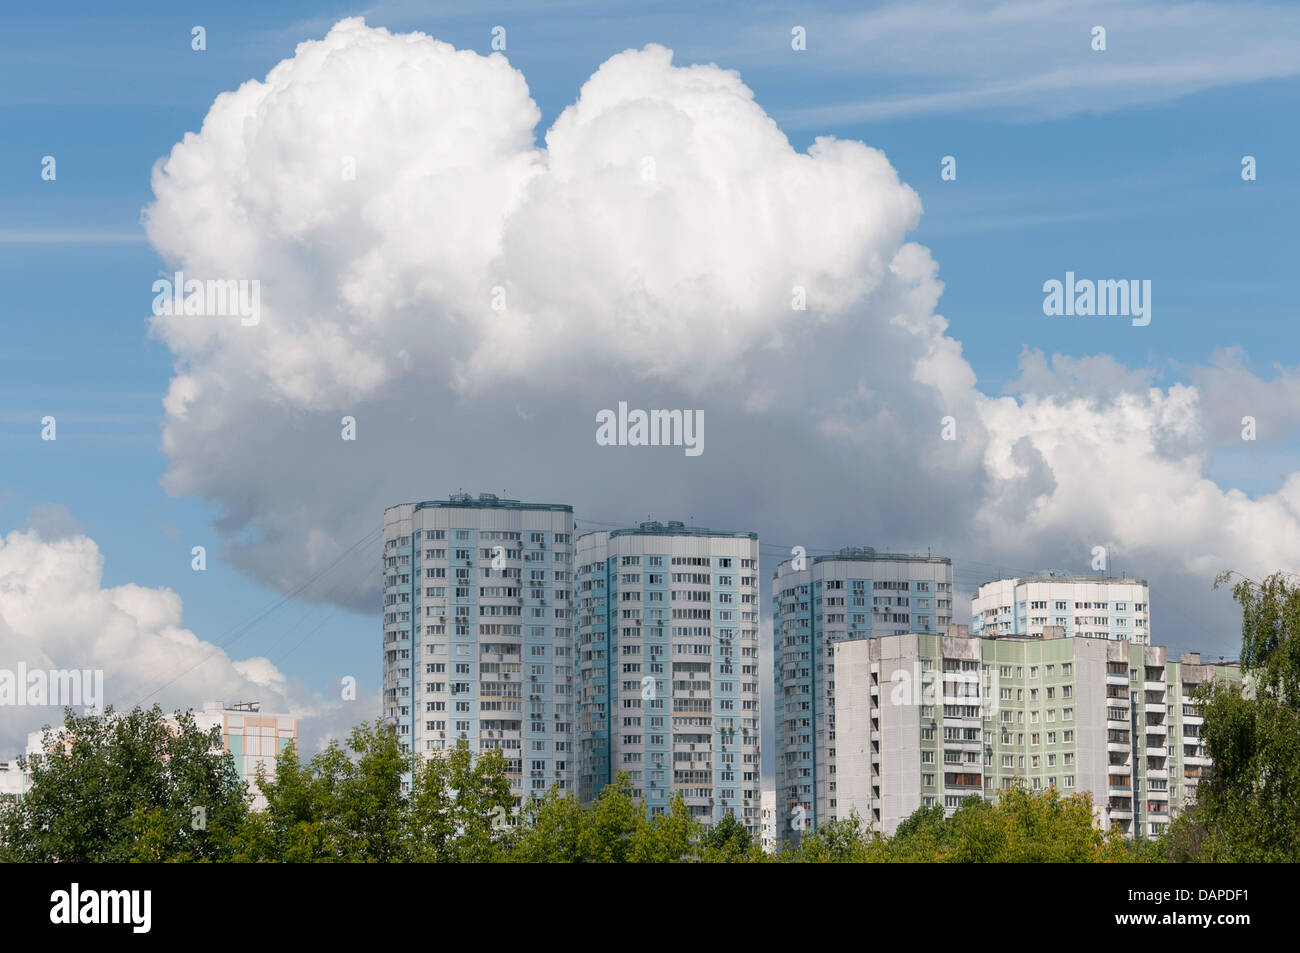 Bloques de pisos en gran nube blanca en el verano Foto de stock